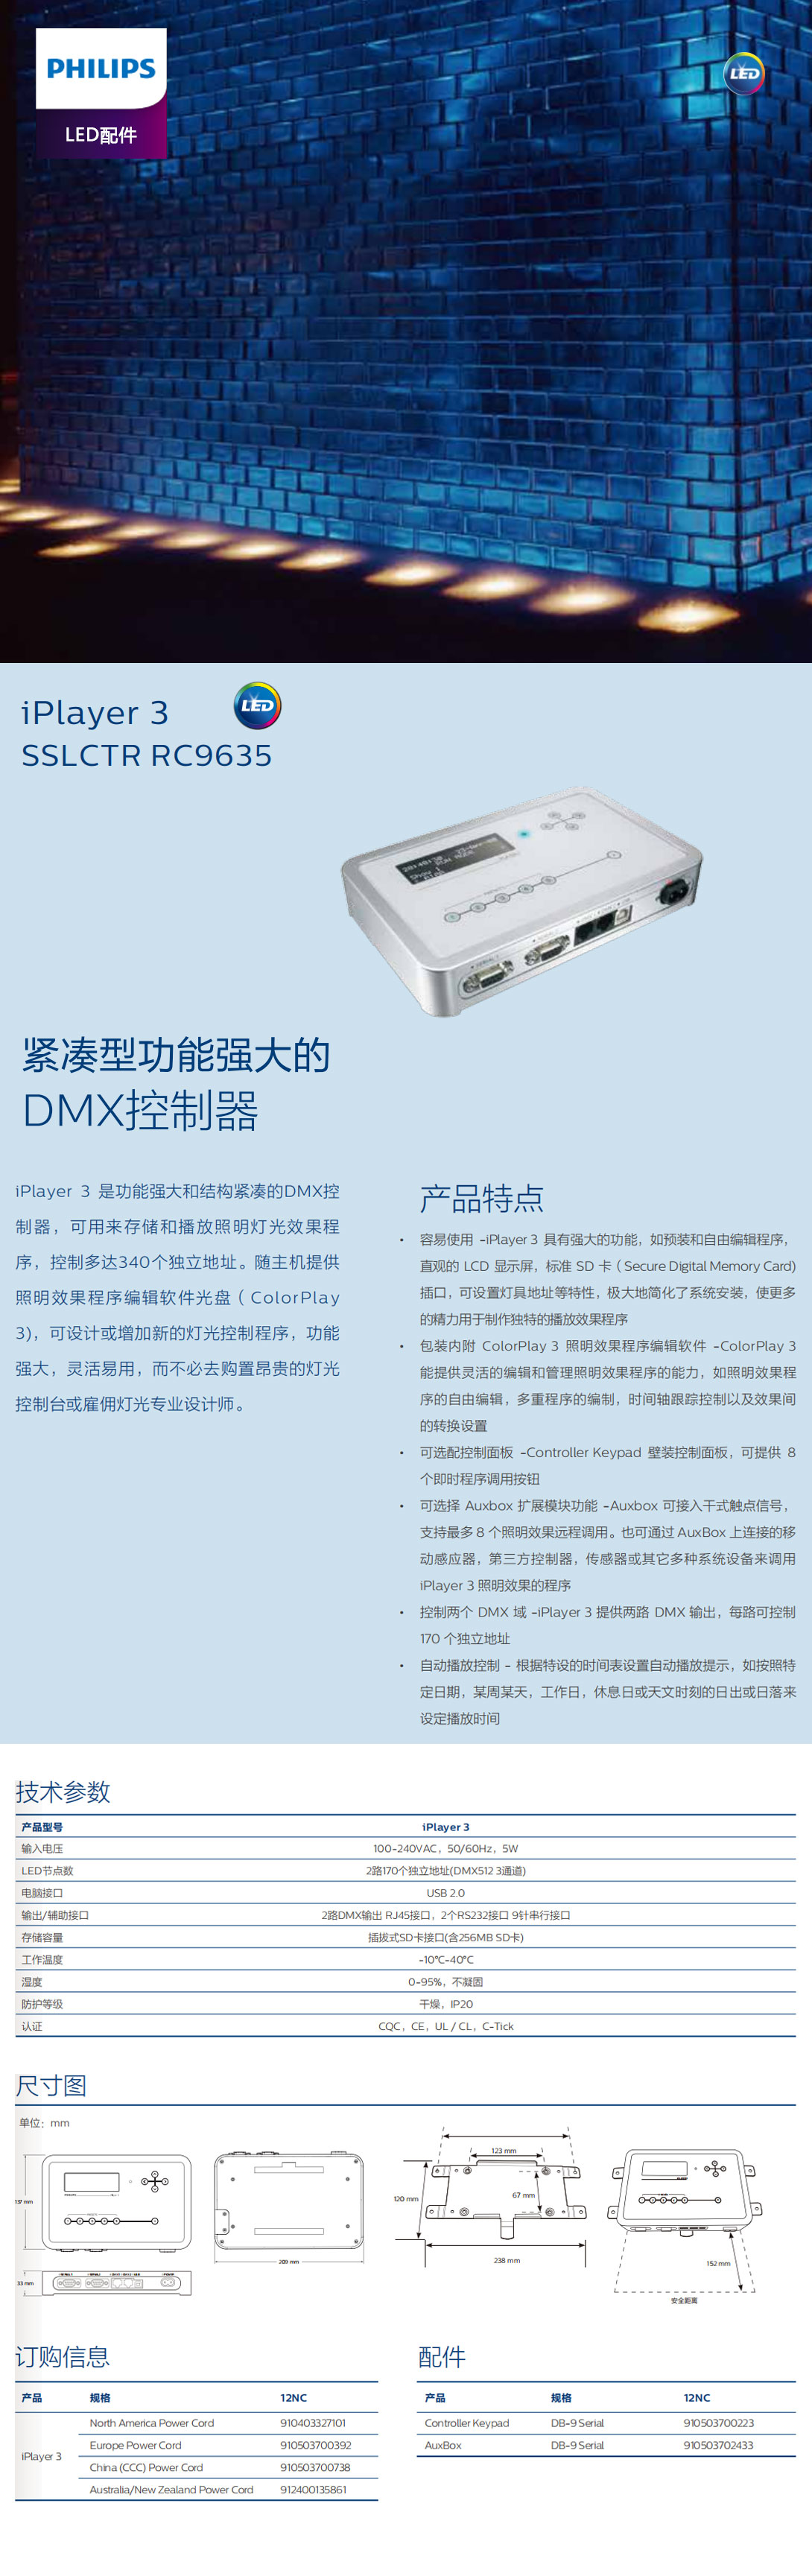 紧凑型功能强大的DMX控制器.jpg